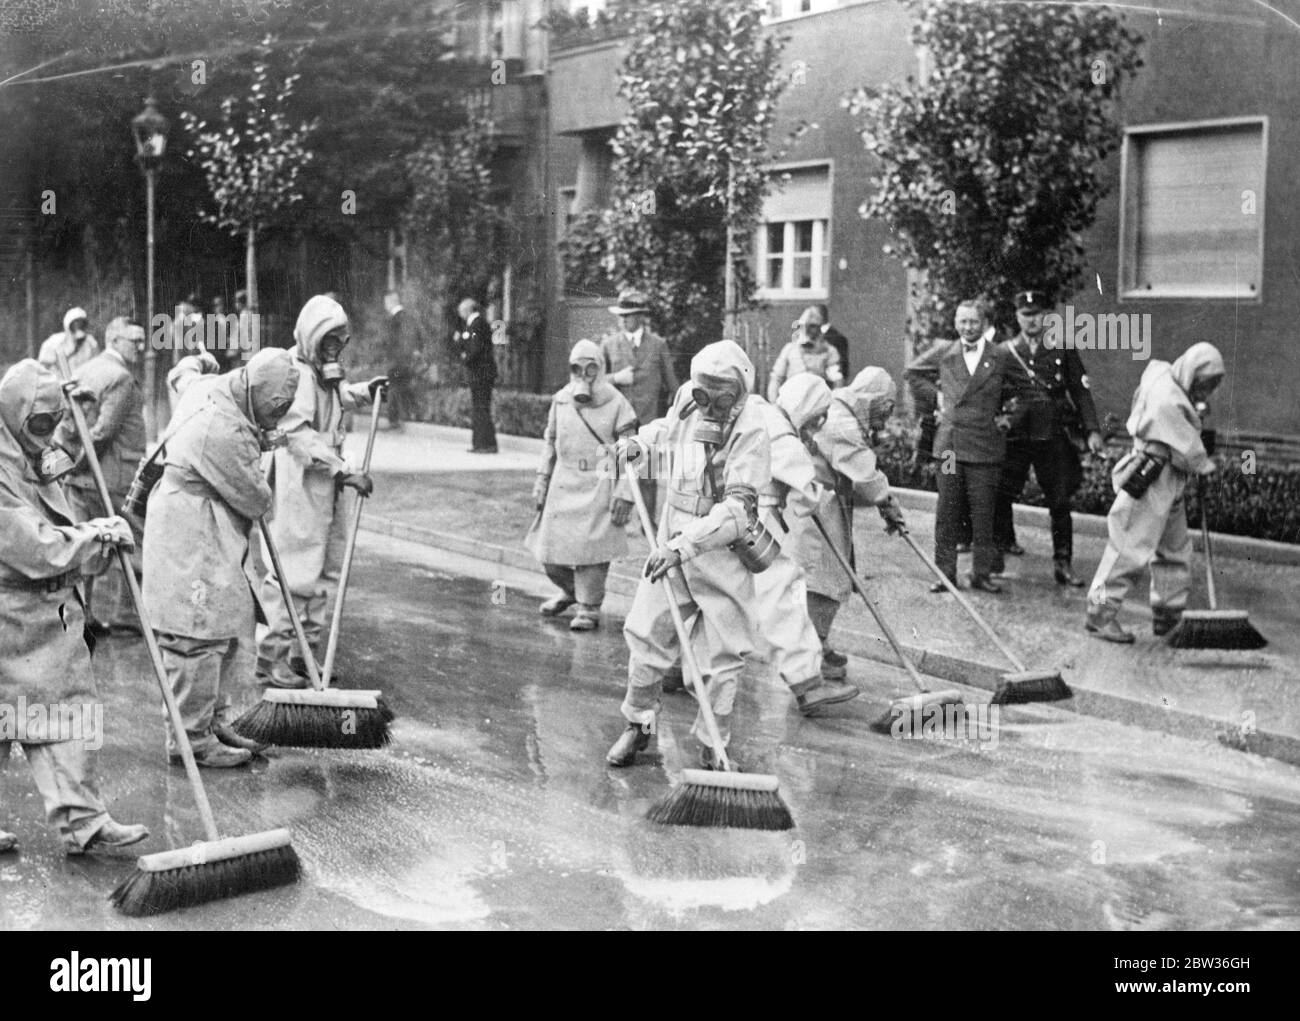 Le strade tedesche saranno pulite come di consueto durante la prossima guerra . Affinché ogni cittadino sappia combattere gli attacchi di gas durante la prossima guerra senza discostarsi dalla sua consueta routine , i lavoratori sono stati tenuti a sottoporsi ad un periodo di formazione nell' uso delle maschere a gas in molte città tedesche. I pulitori di strada che indossavano maschere a gas mentre spazzavano le strade erano uno spettacolo romanzo a Berlino. I pulitori di strada indossavano maschere a gas mentre lavoravano in una strada di Berlino . 19 agosto 1933 Foto Stock